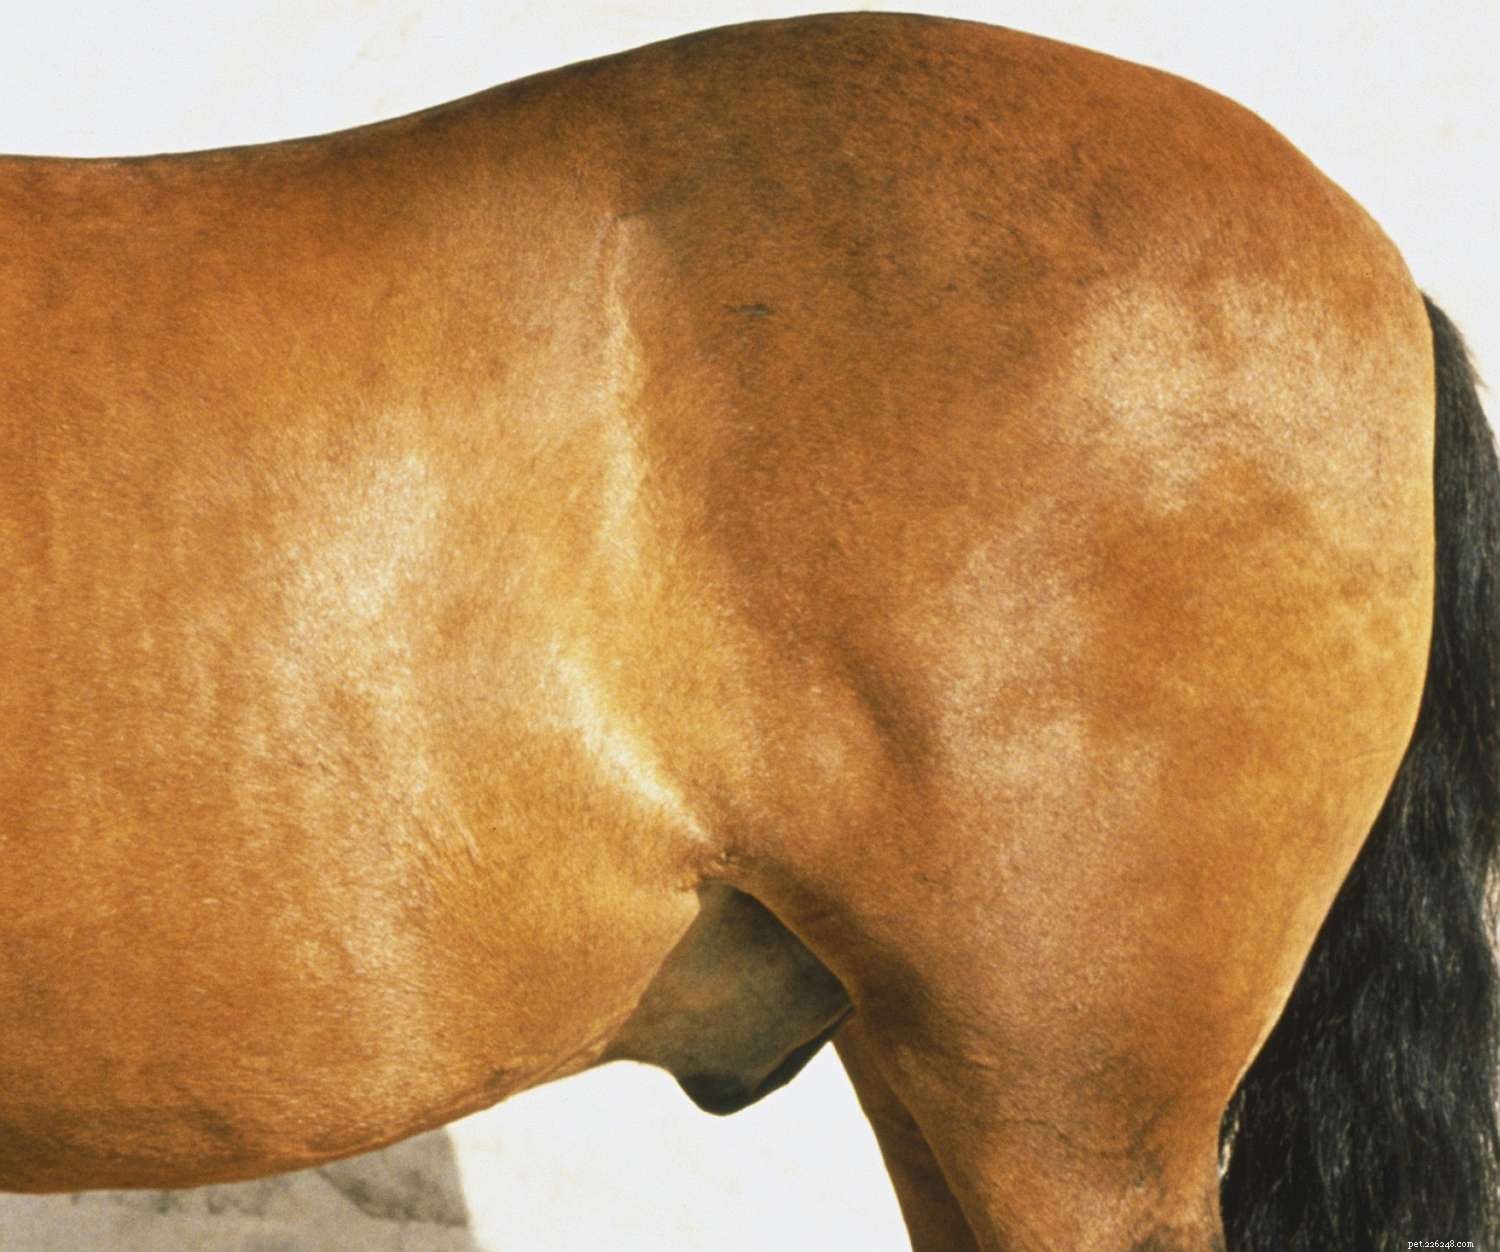 Obrázkový průvodce různými částmi koně